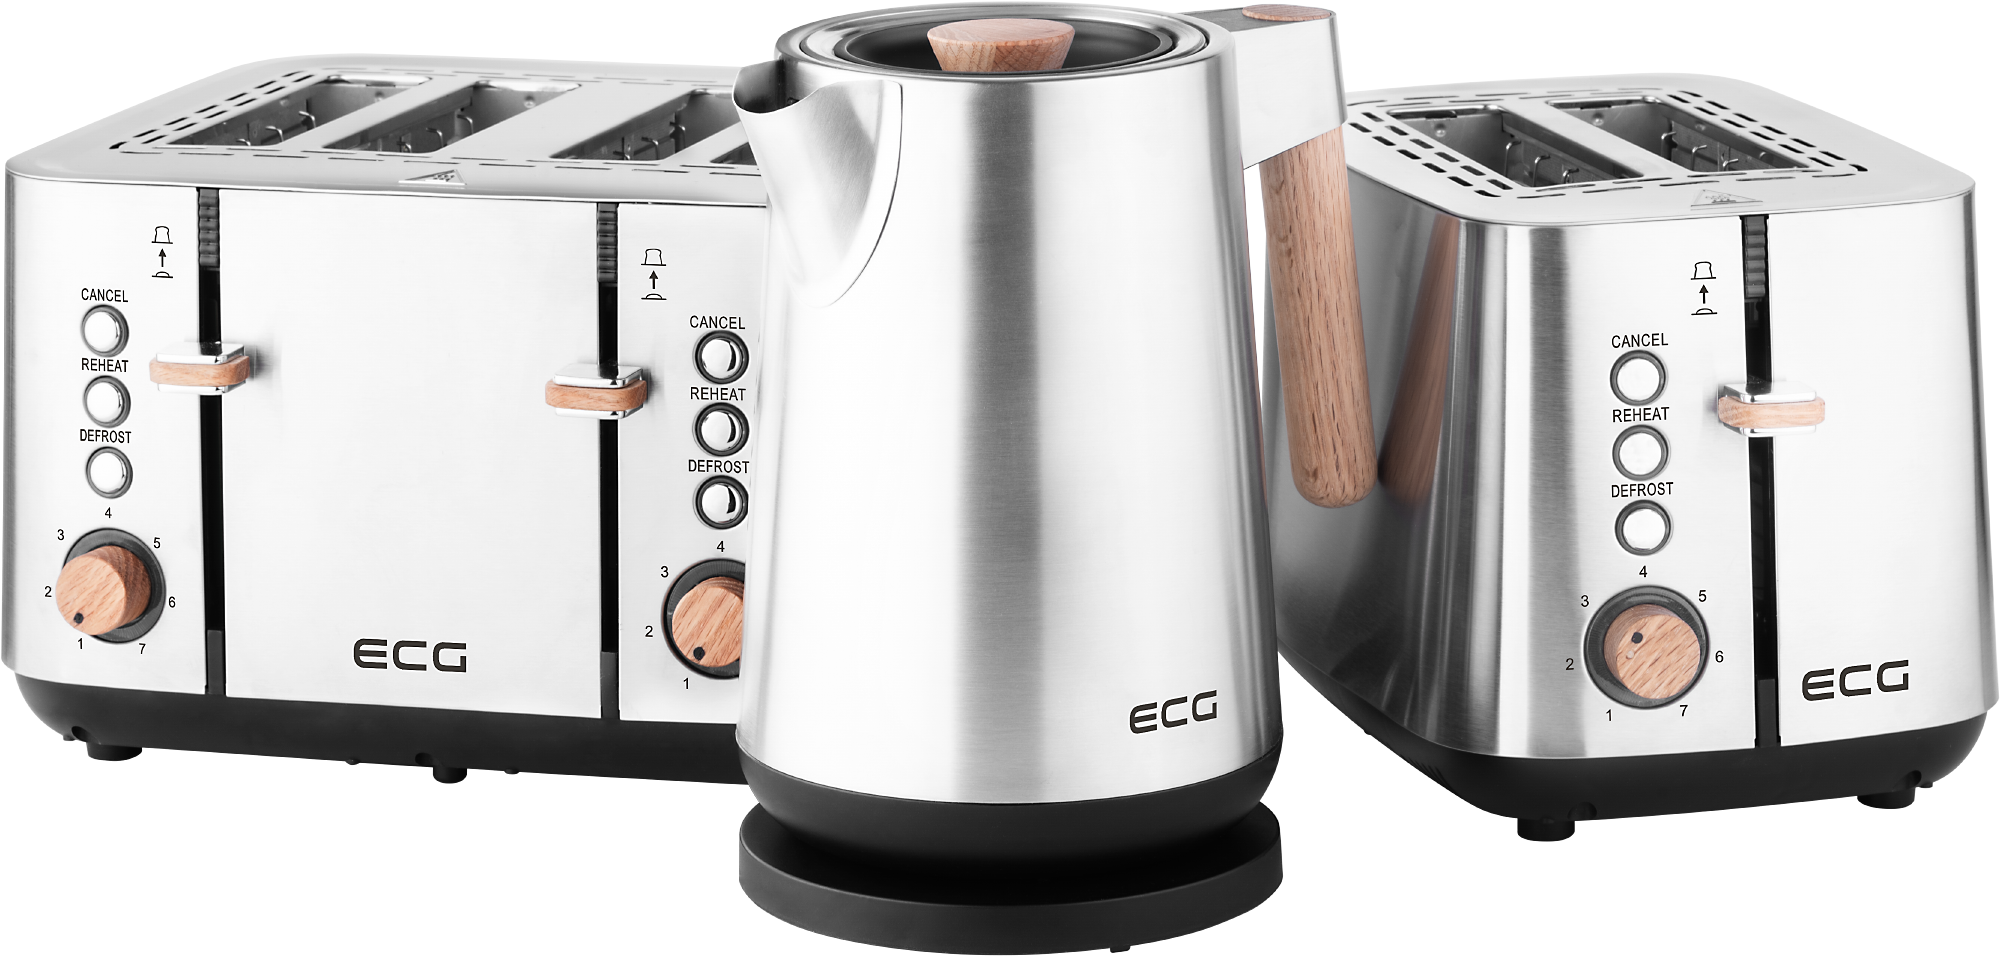 ECG RK 1220 ST purple - Electric kettle